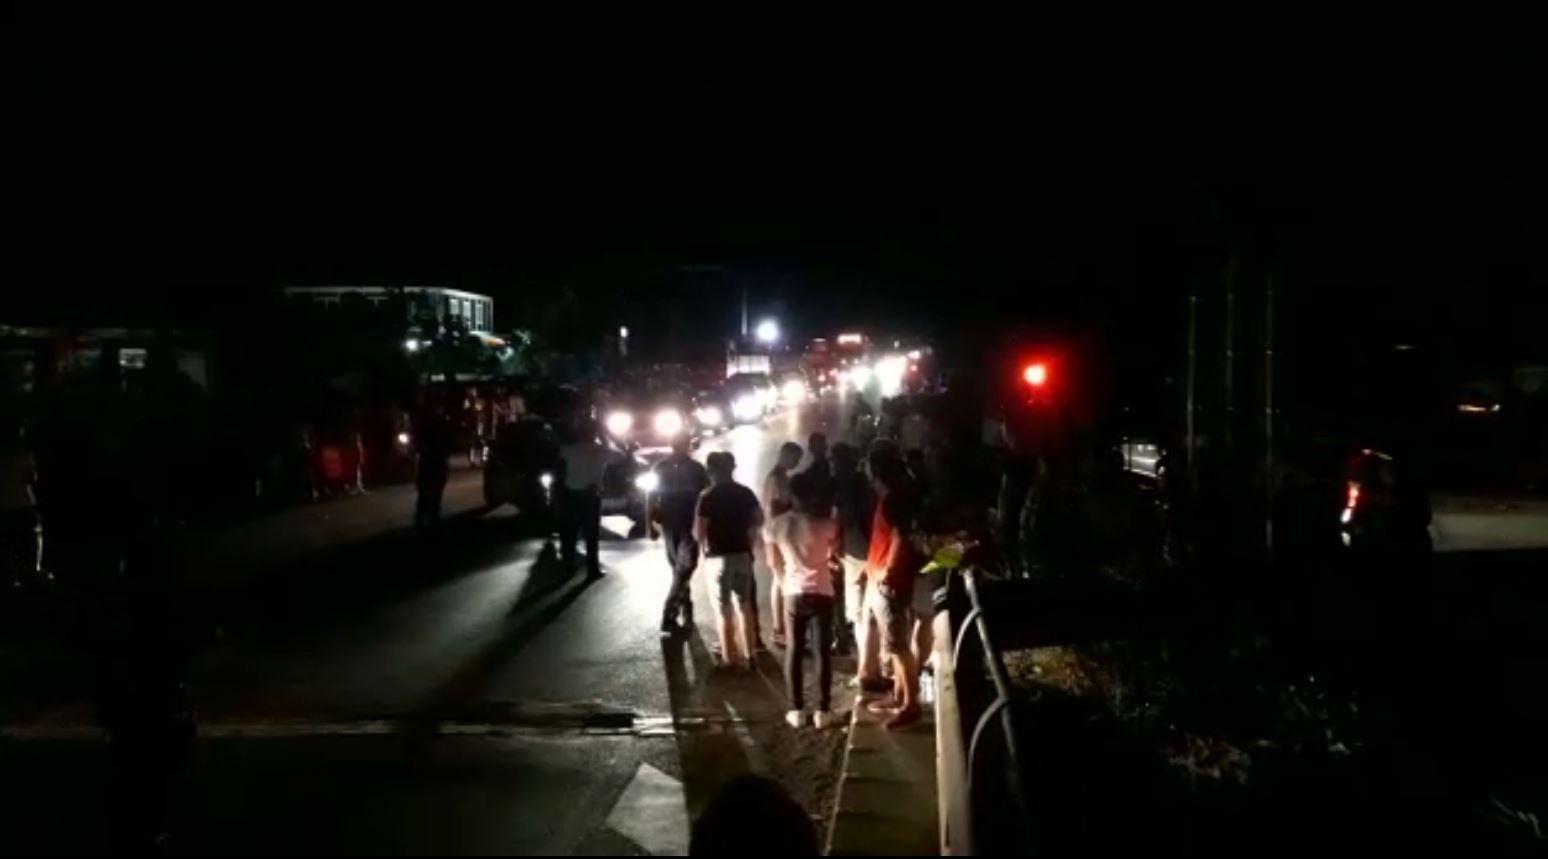 Shpërthimi në pikën e karburantit, policia: 7 të plagosur mes tyre dhe 2 fëmijë